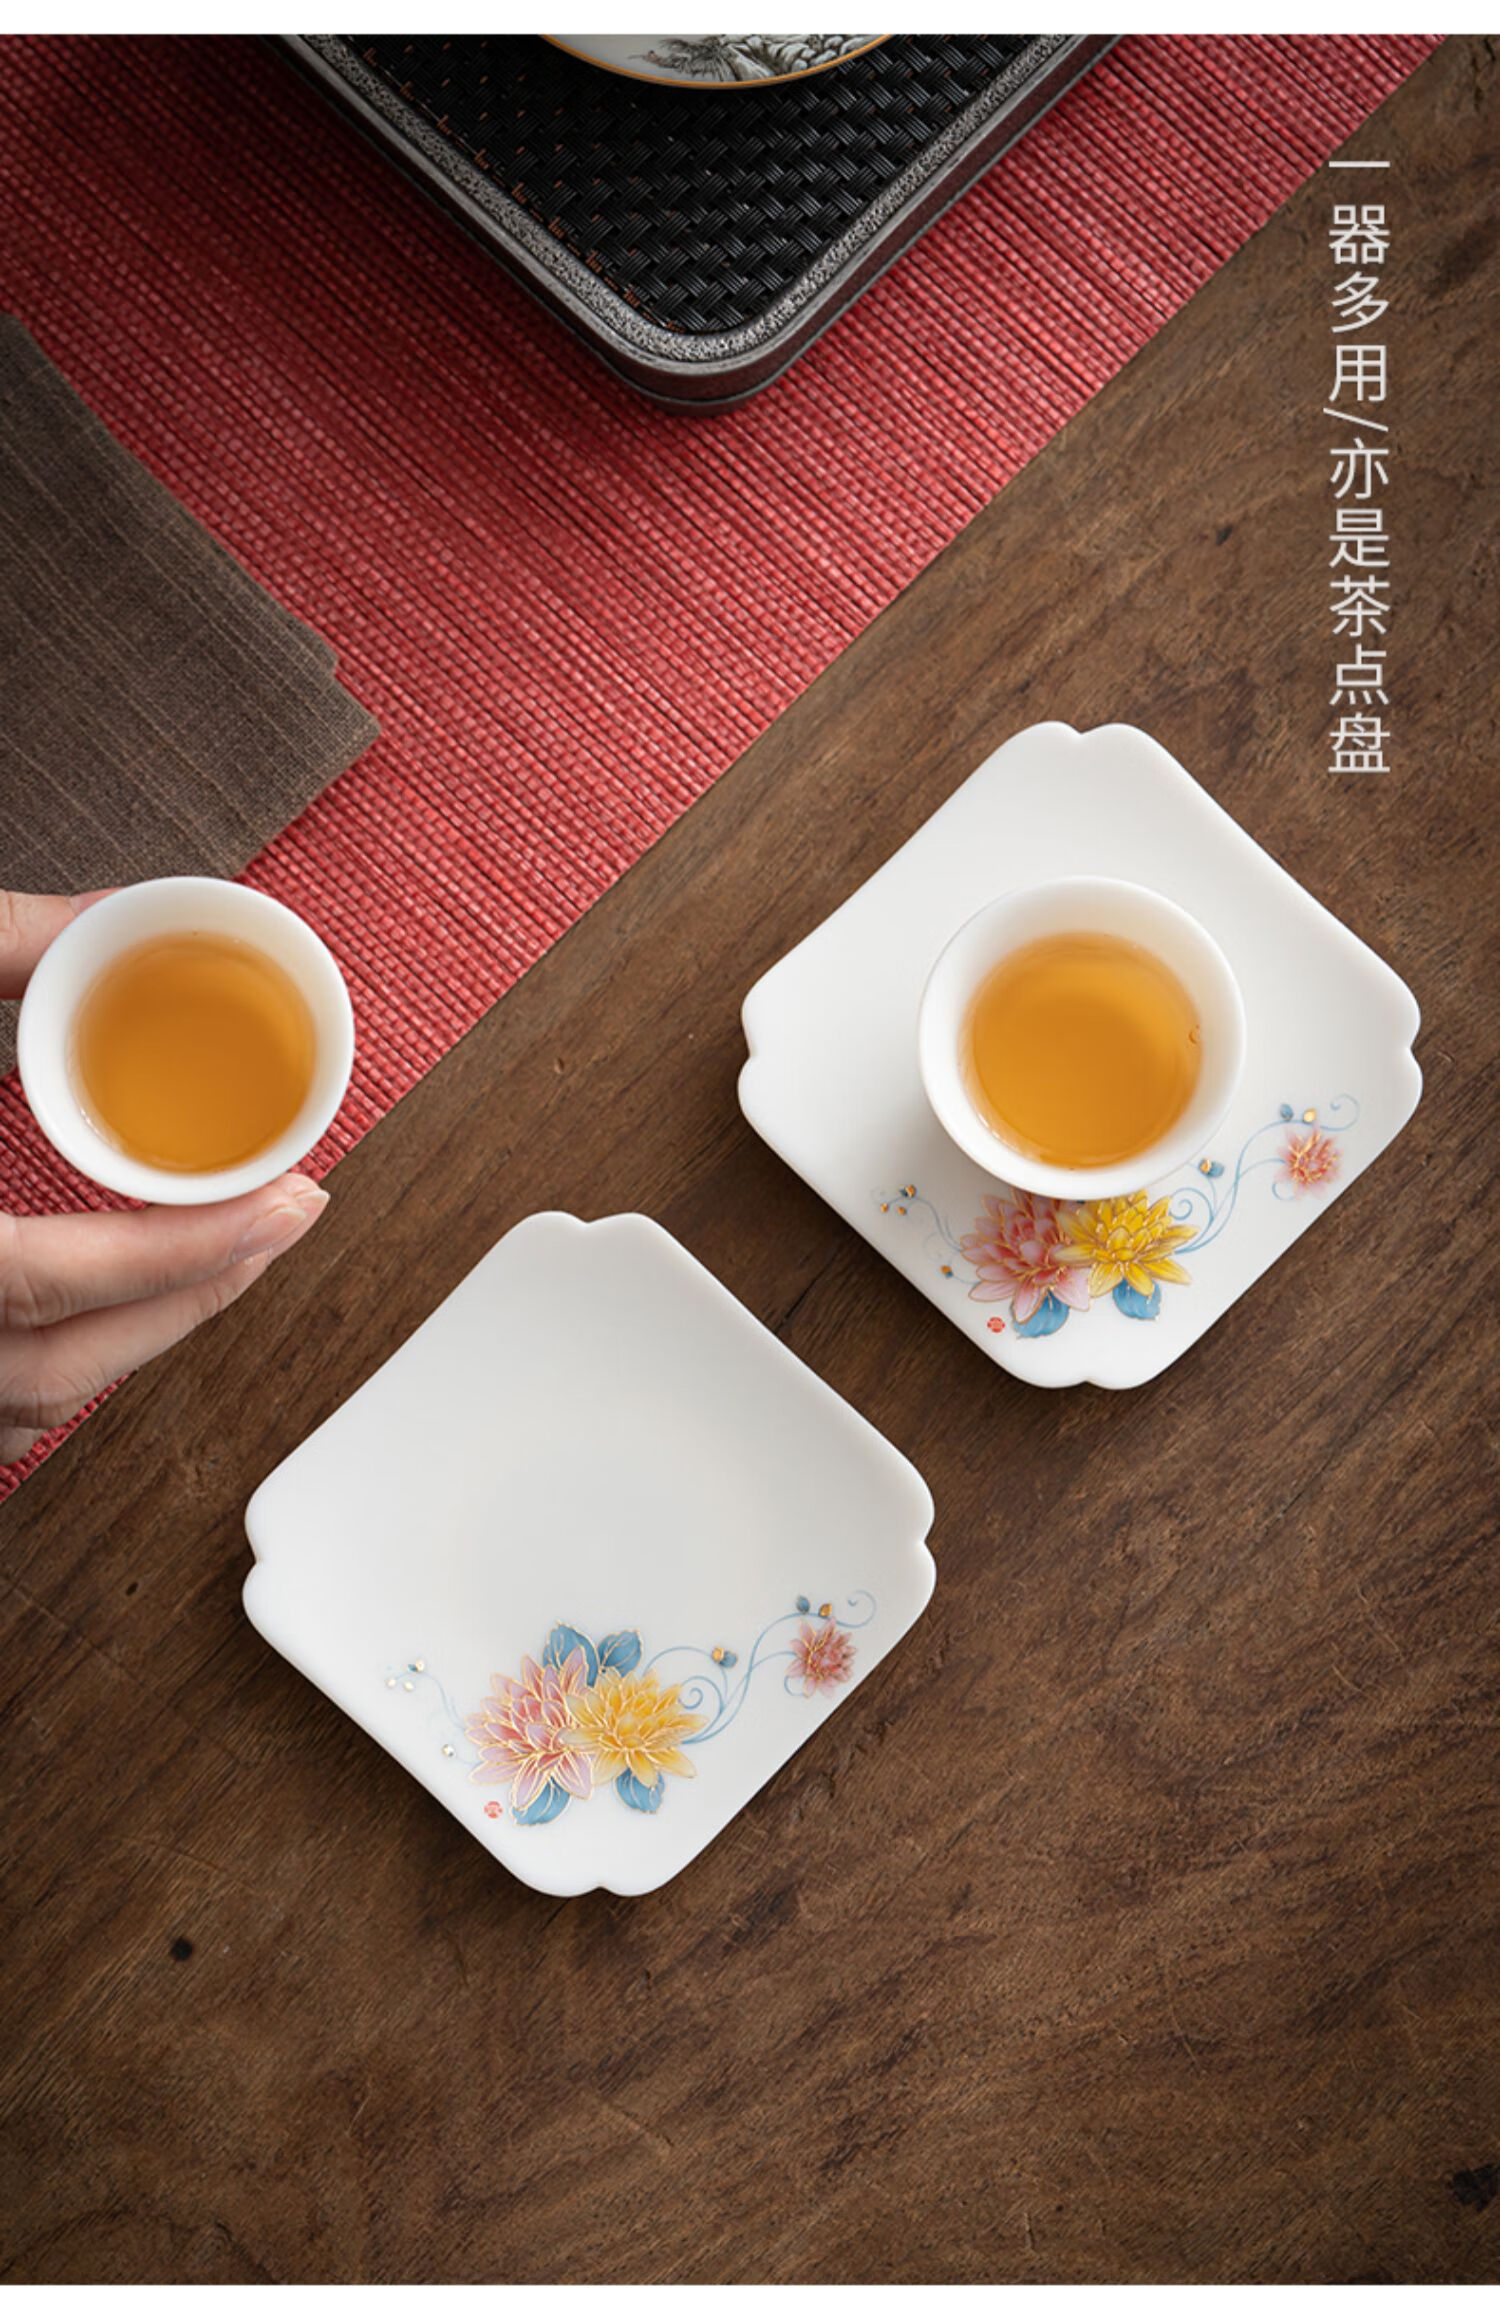 玉杯垫四方茶垫茶杯托陶瓷家用功夫茶具干泡碟配件 羊脂玉瓷杯垫